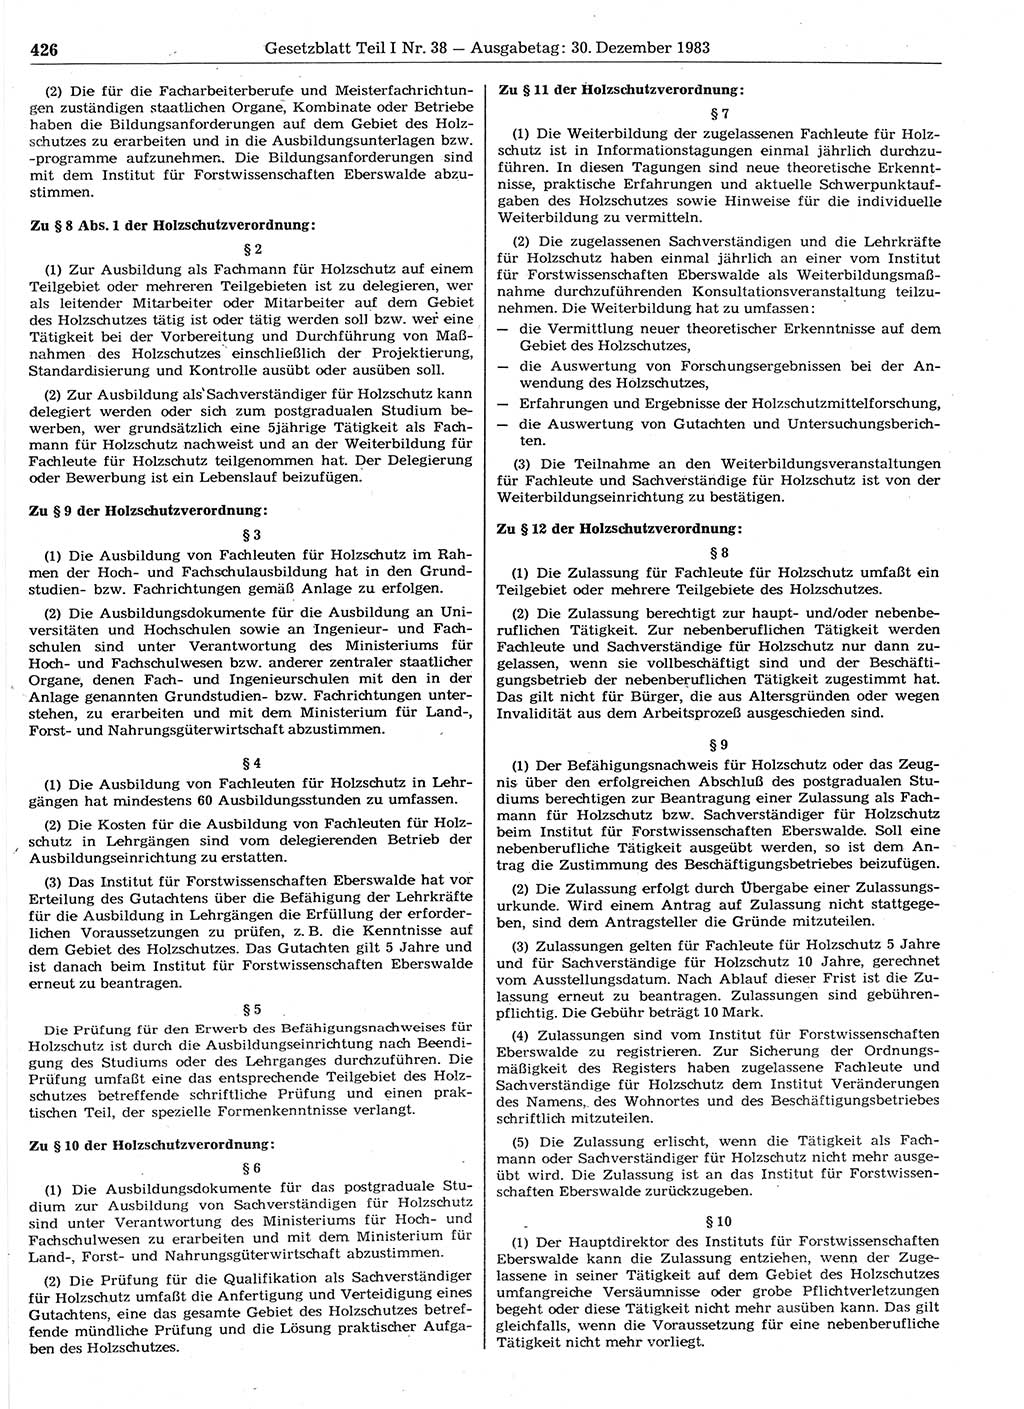 Gesetzblatt (GBl.) der Deutschen Demokratischen Republik (DDR) Teil Ⅰ 1983, Seite 426 (GBl. DDR Ⅰ 1983, S. 426)